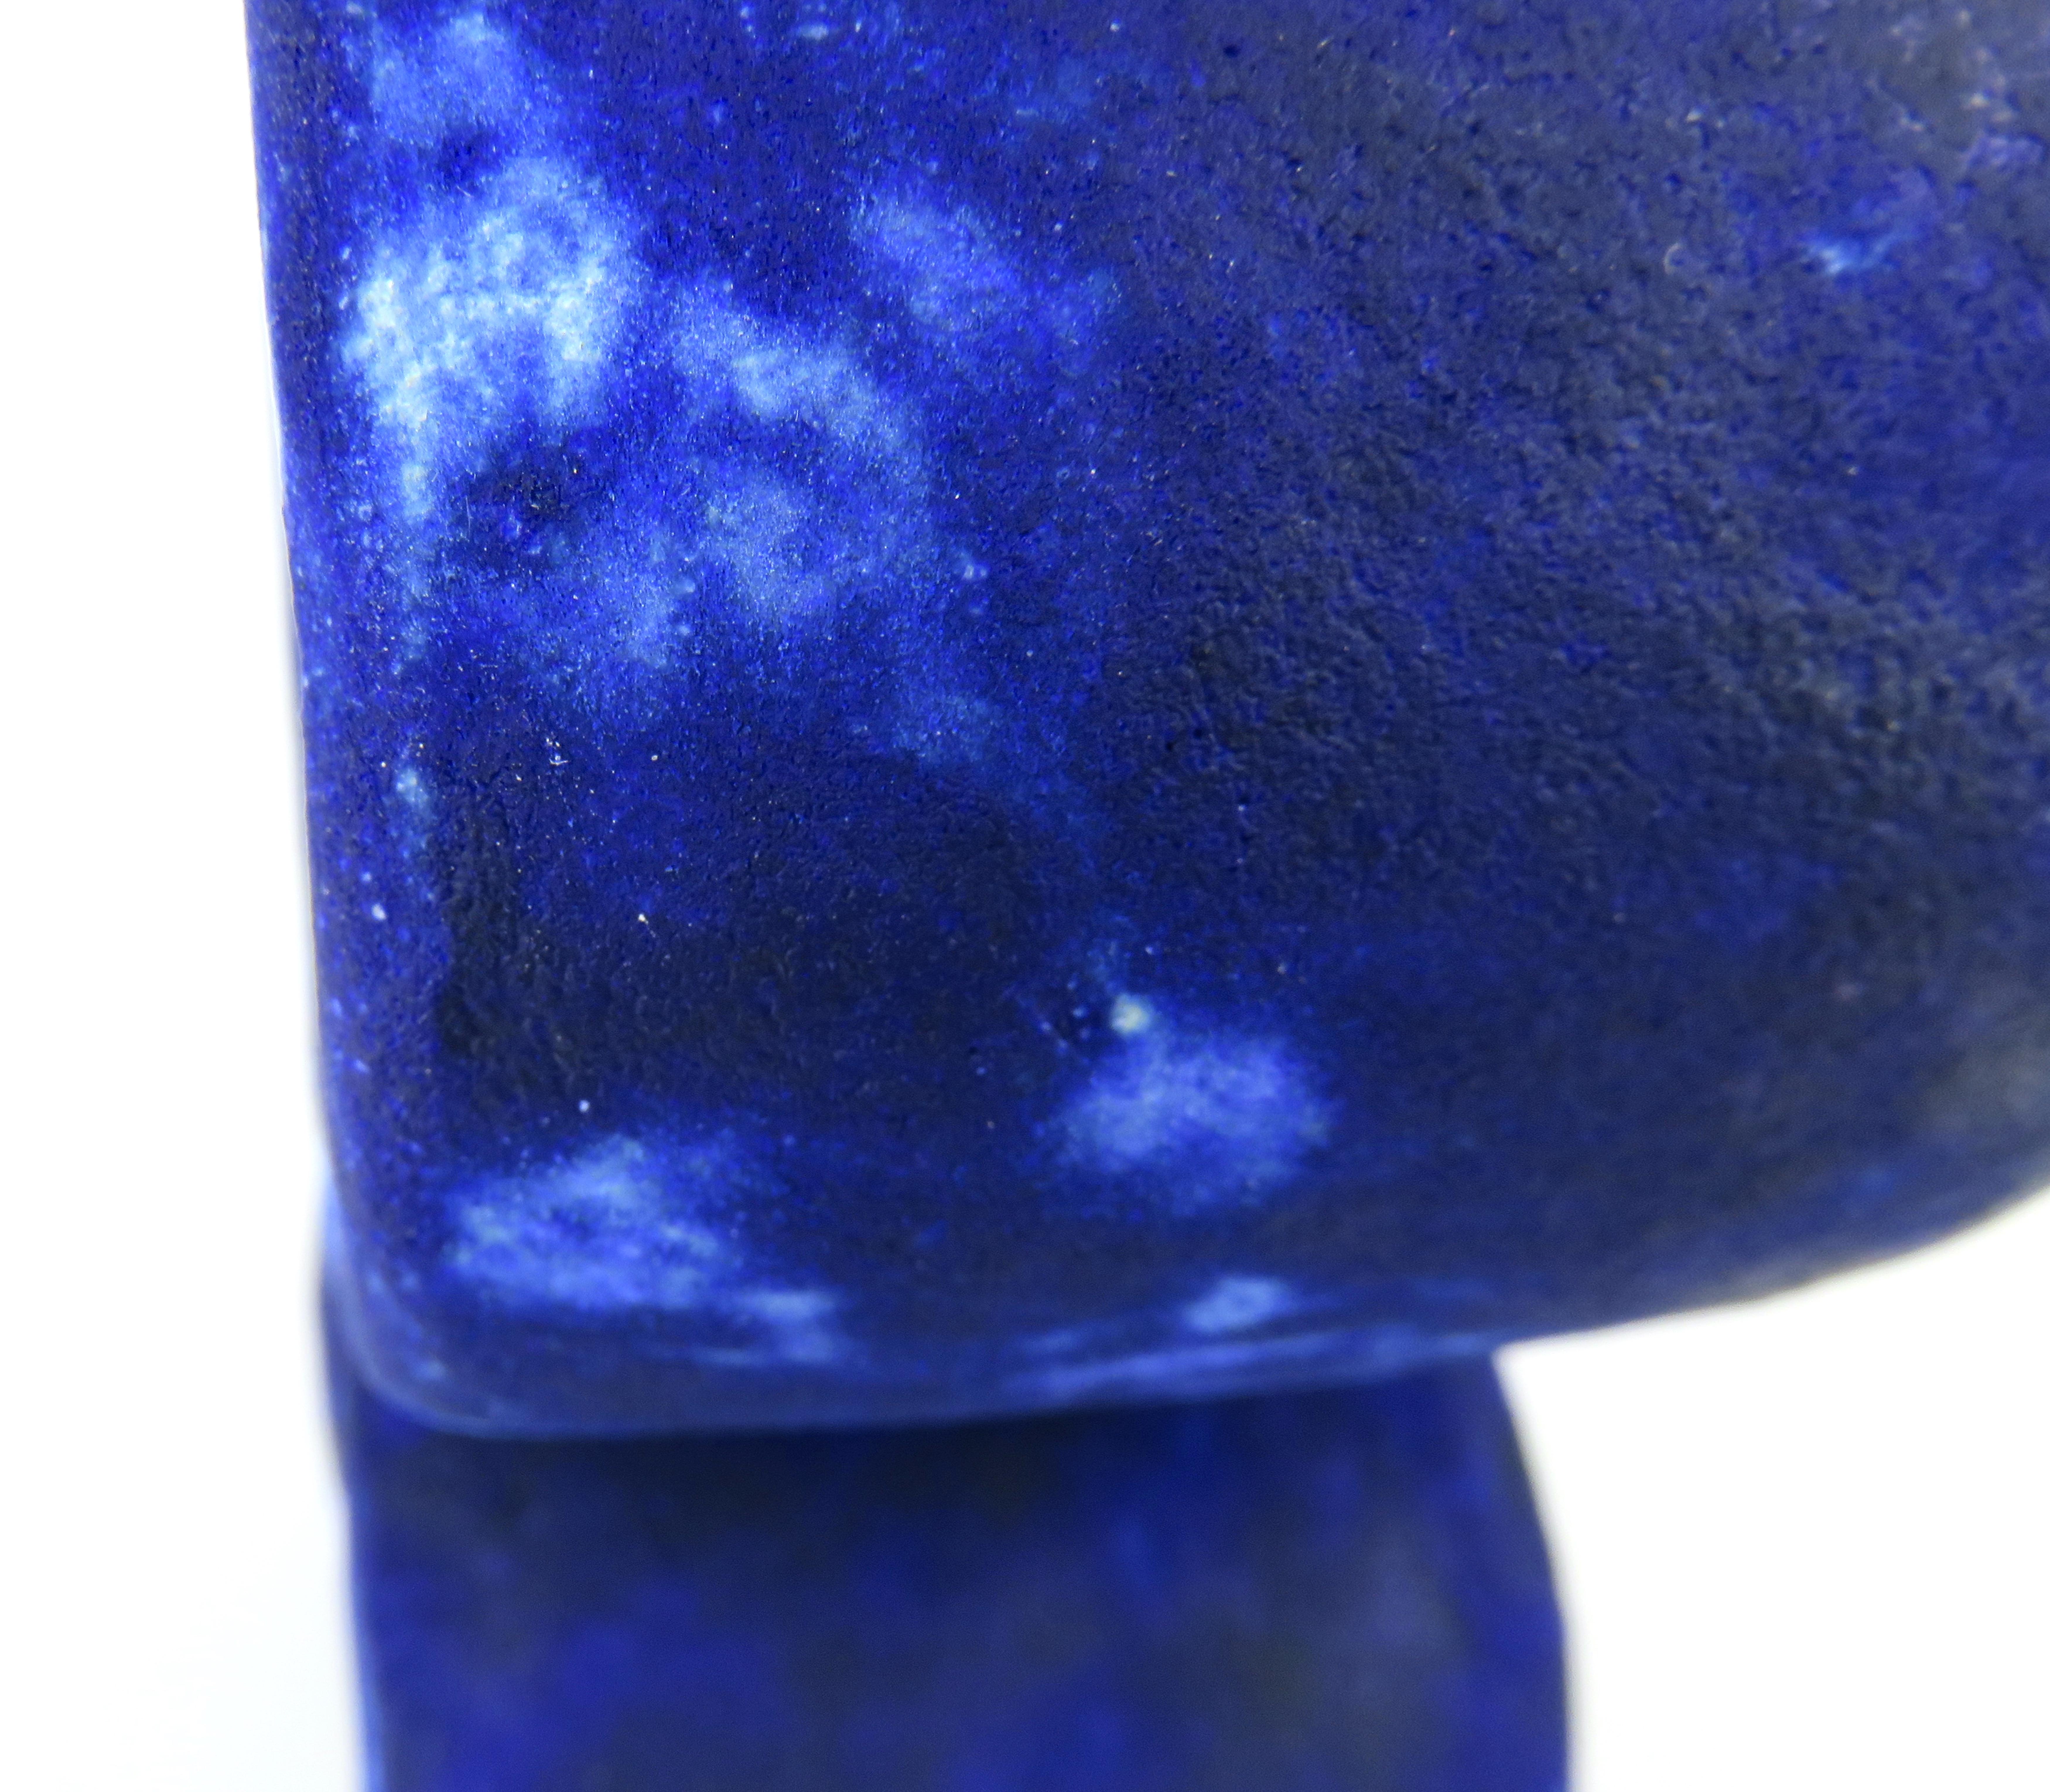 D'un bleu profond tacheté avec des zones claires et sombres, cette étonnante surface de glaçage mat est le résultat d'une erreur dans la chimie du glaçage et j'en suis ravi ! Il me rappelle le bleu Yves Klein, un bleu profond et intense dont je ne